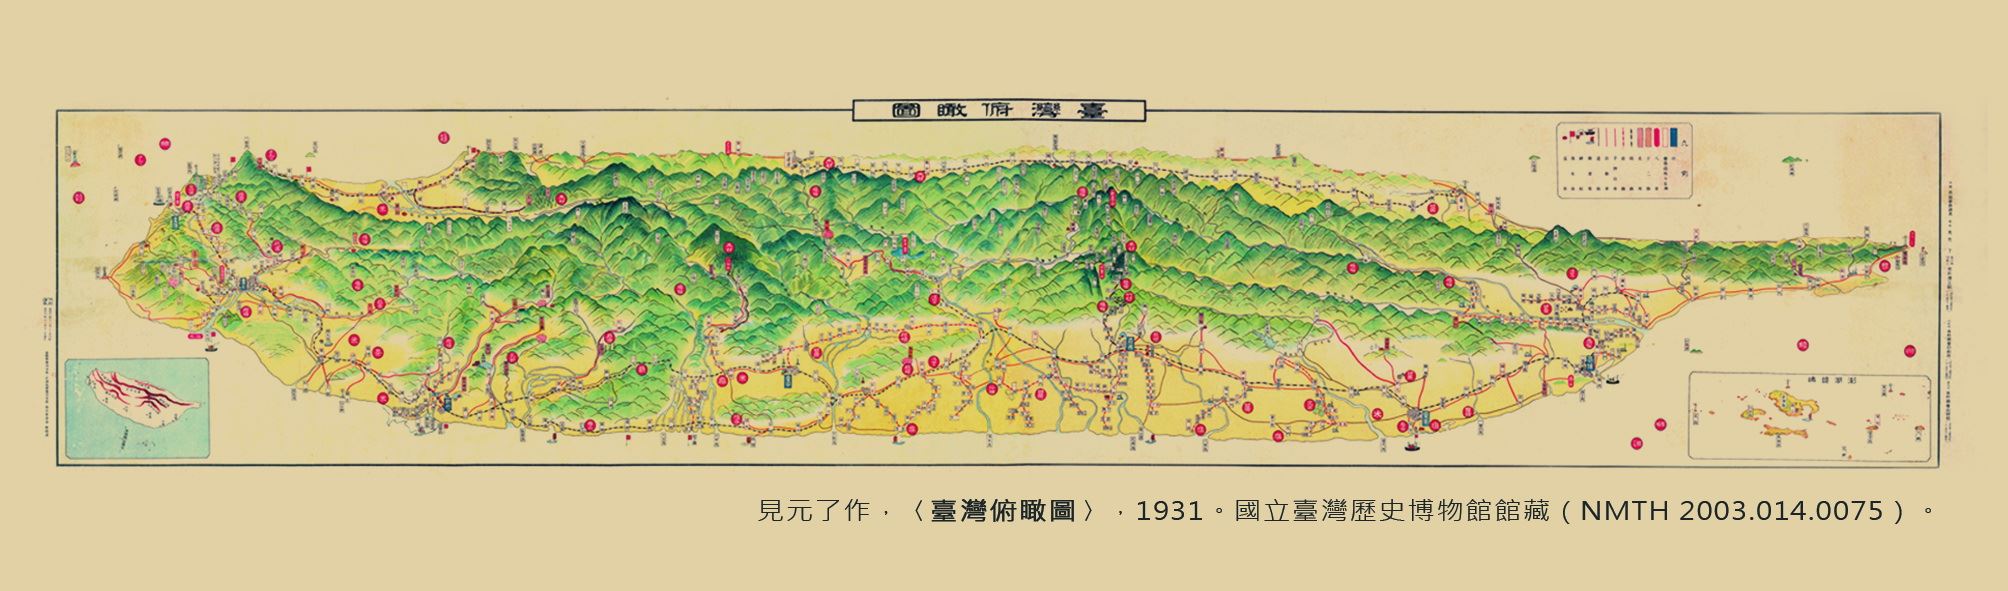 地圖書籤2(1931年-臺灣)-正